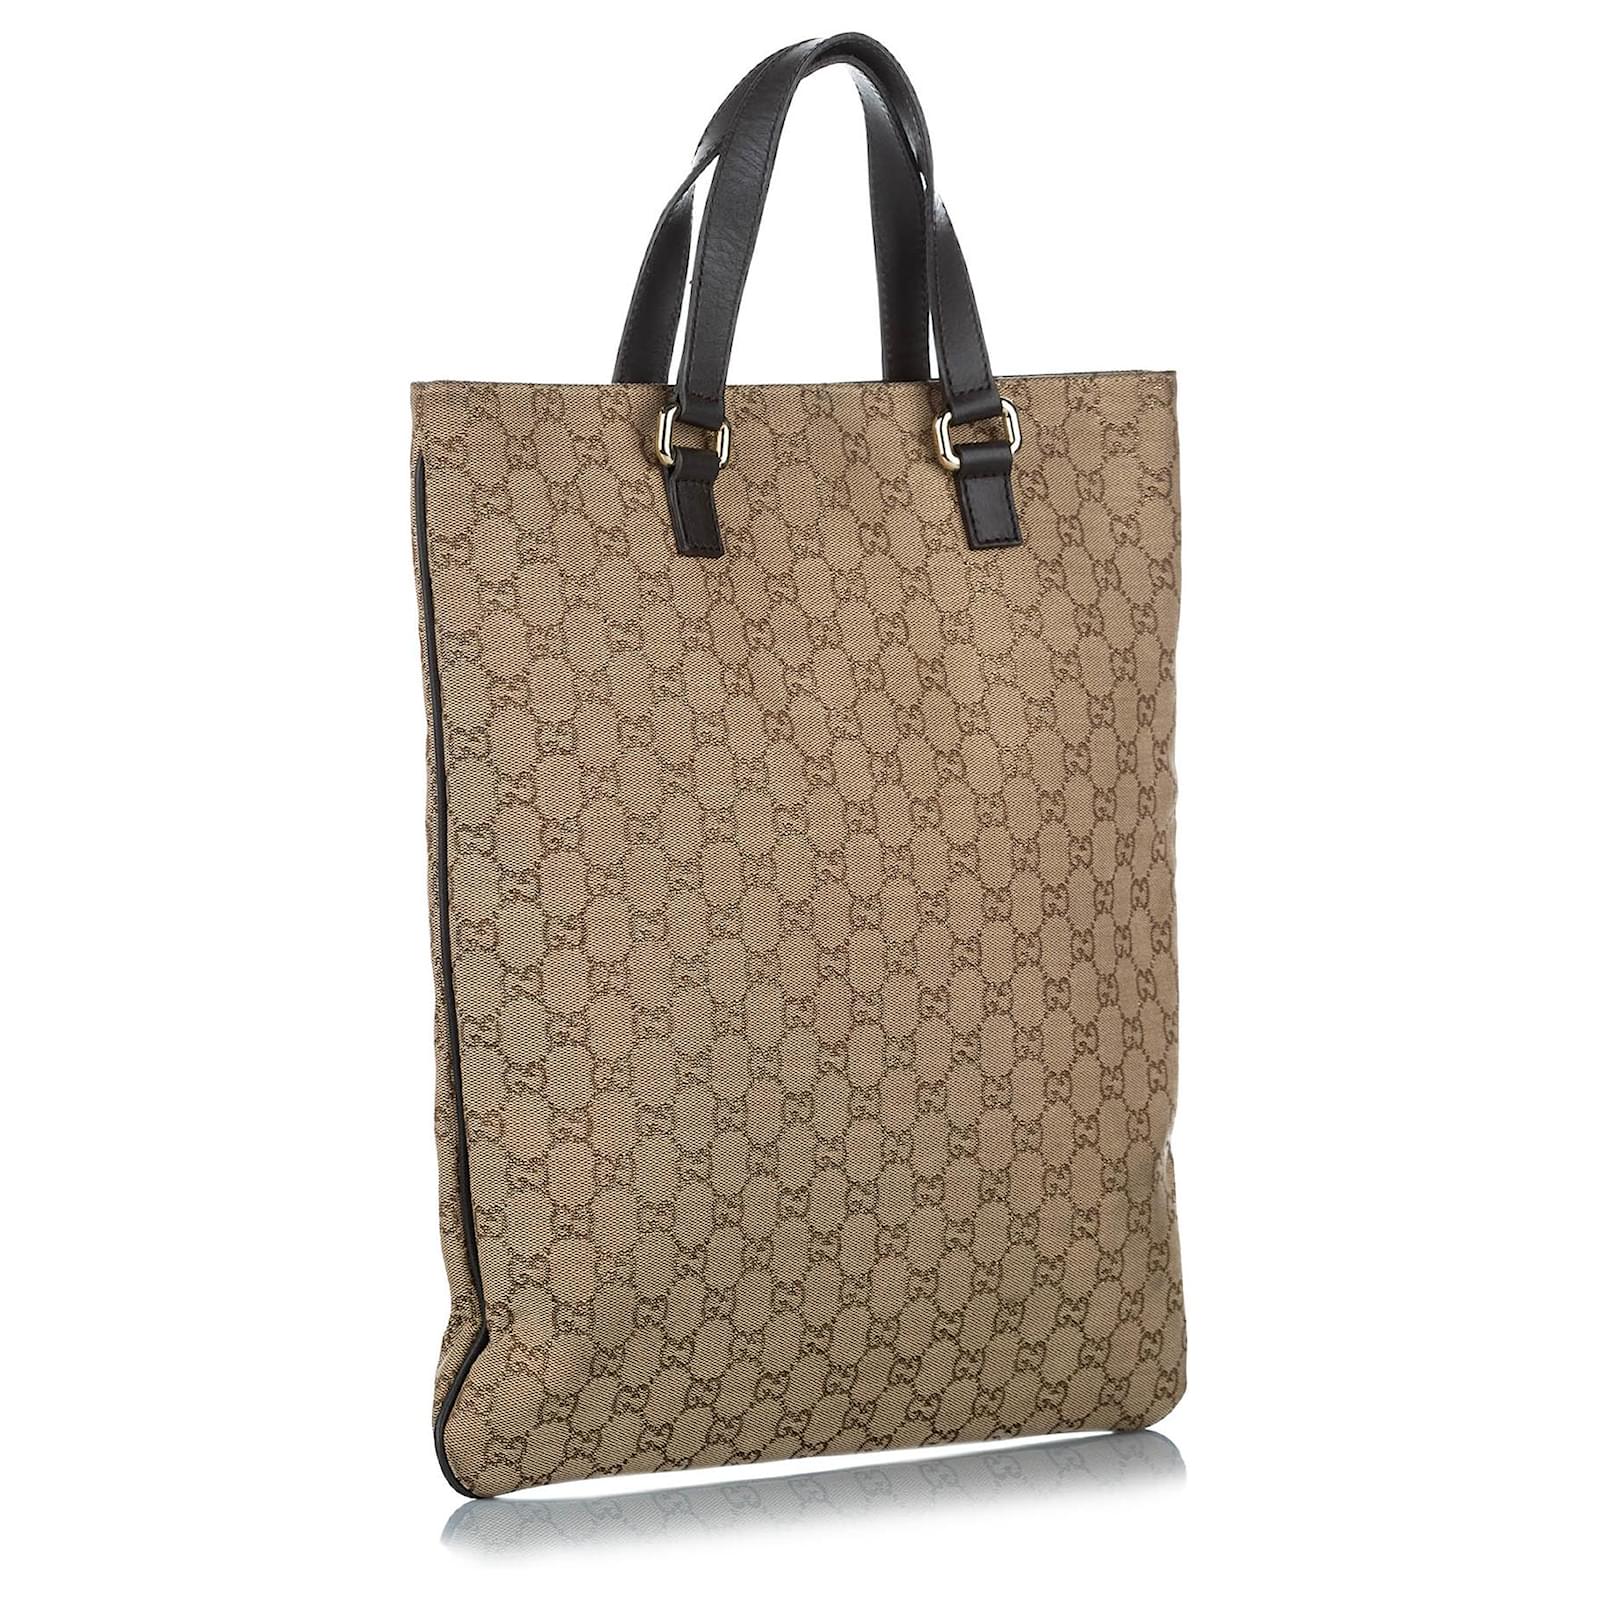 Gucci GG Supreme Canvas Tote Bag Black